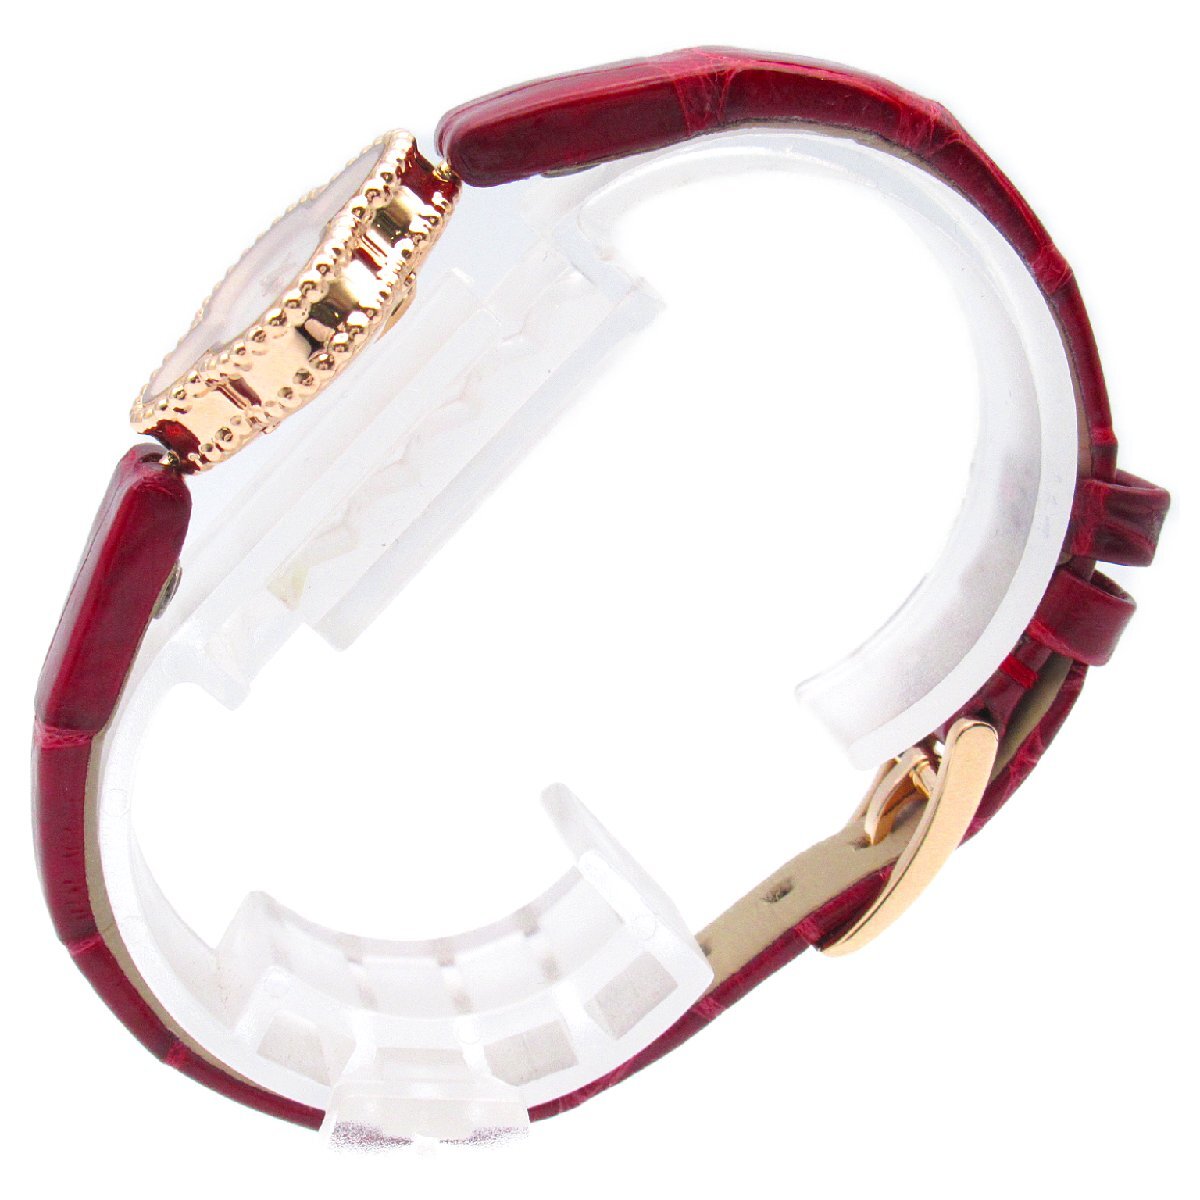  Van Cleef & Arpels Suite aru handle bla brand off K18PG( pink gold ) wristwatch PG/ black ko leather used lady's 